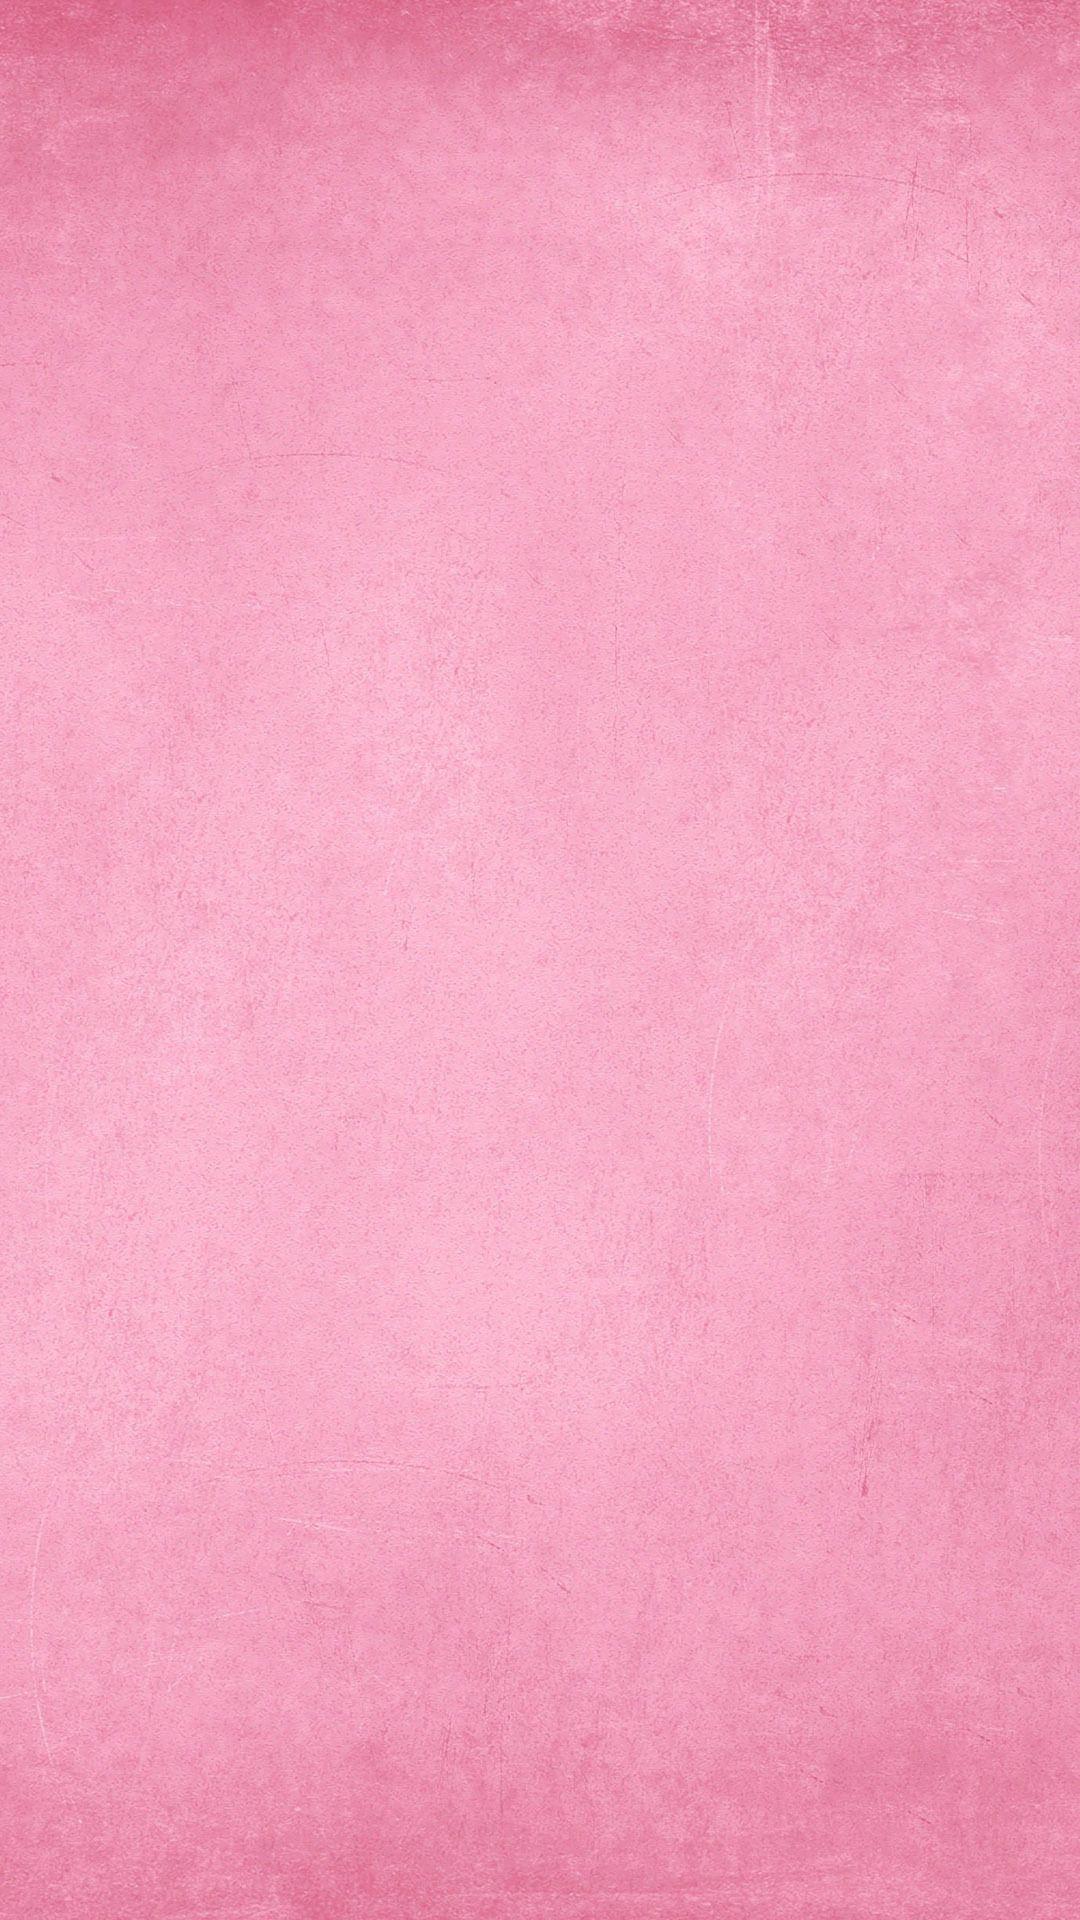 Những hình ảnh nền màu hồng đẹp là điều không thể bỏ qua cho những tín đồ nữ tính. Với những gam màu pastel tươi sáng, chúng sẽ giúp cho tấm ảnh của bạn trở nên dịu dàng và tinh tế hơn. Còn chần chờ gì nữa, hãy nhanh tay lựa chọn một hình ảnh nền màu hồng đẹp để làm bức ảnh của bạn trở nên nổi bật hơn.